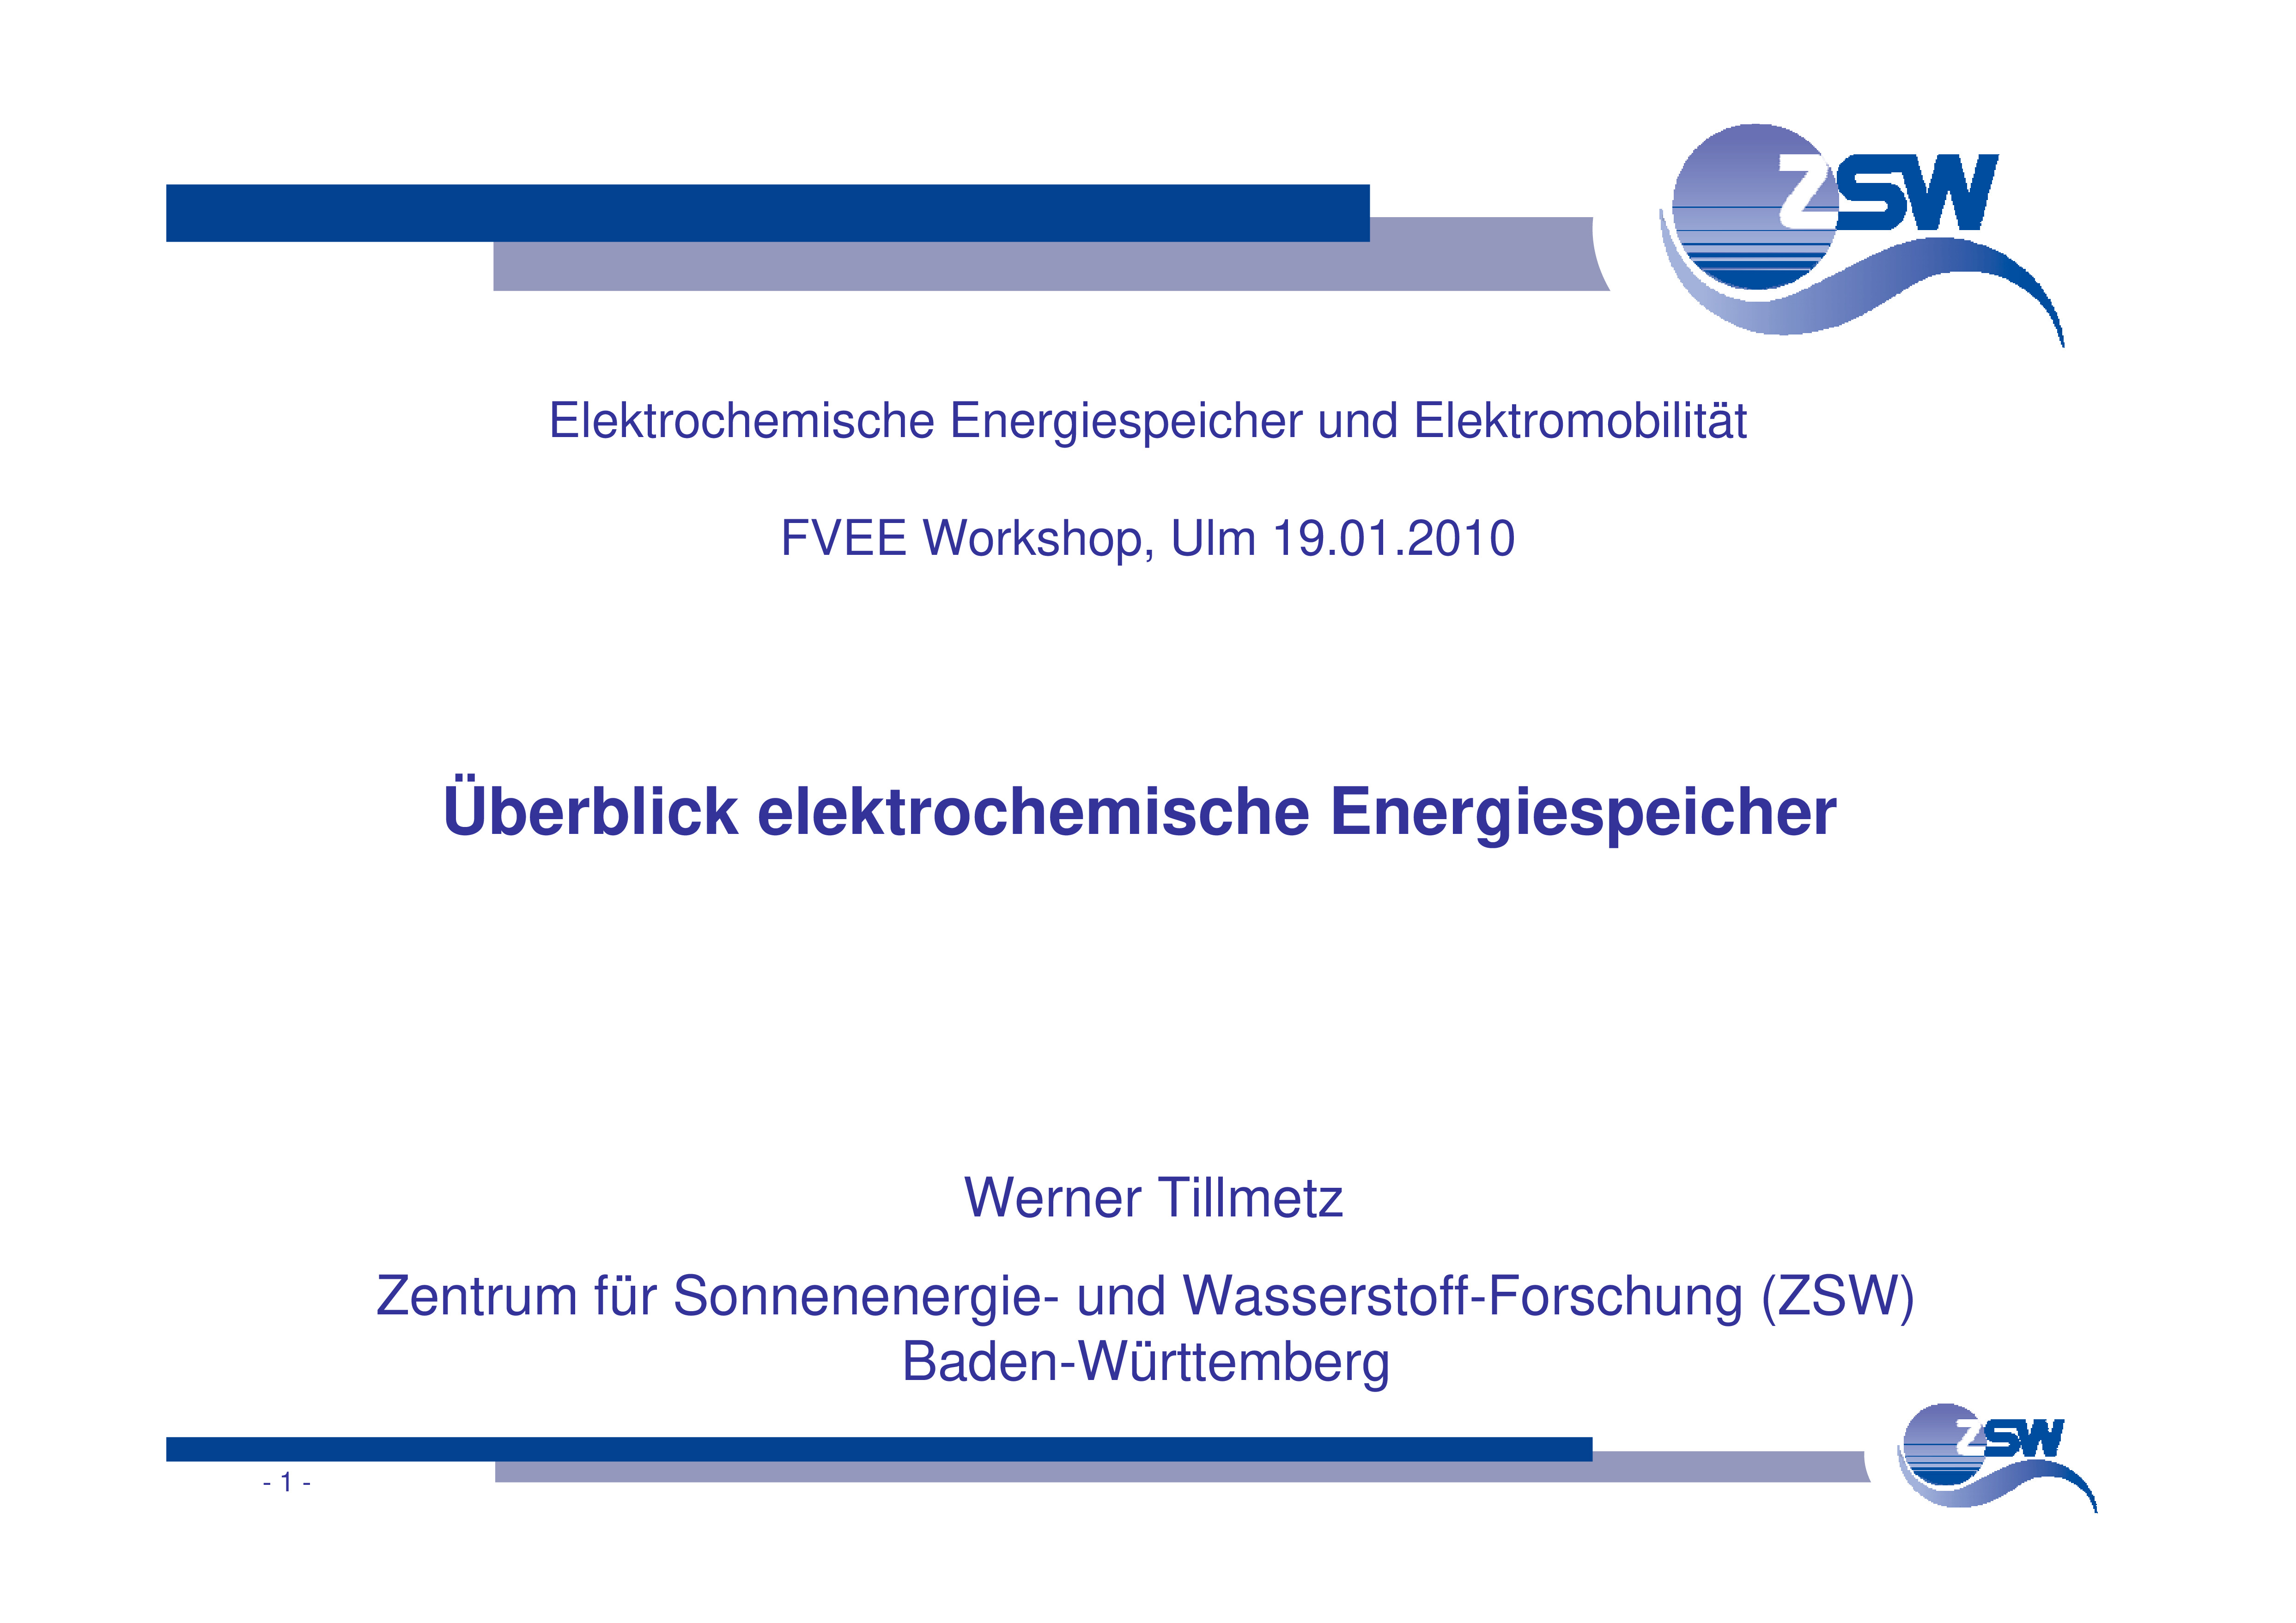 Workshop 2010 "Elektrochemische Energiespeicher und Elektromobilität"